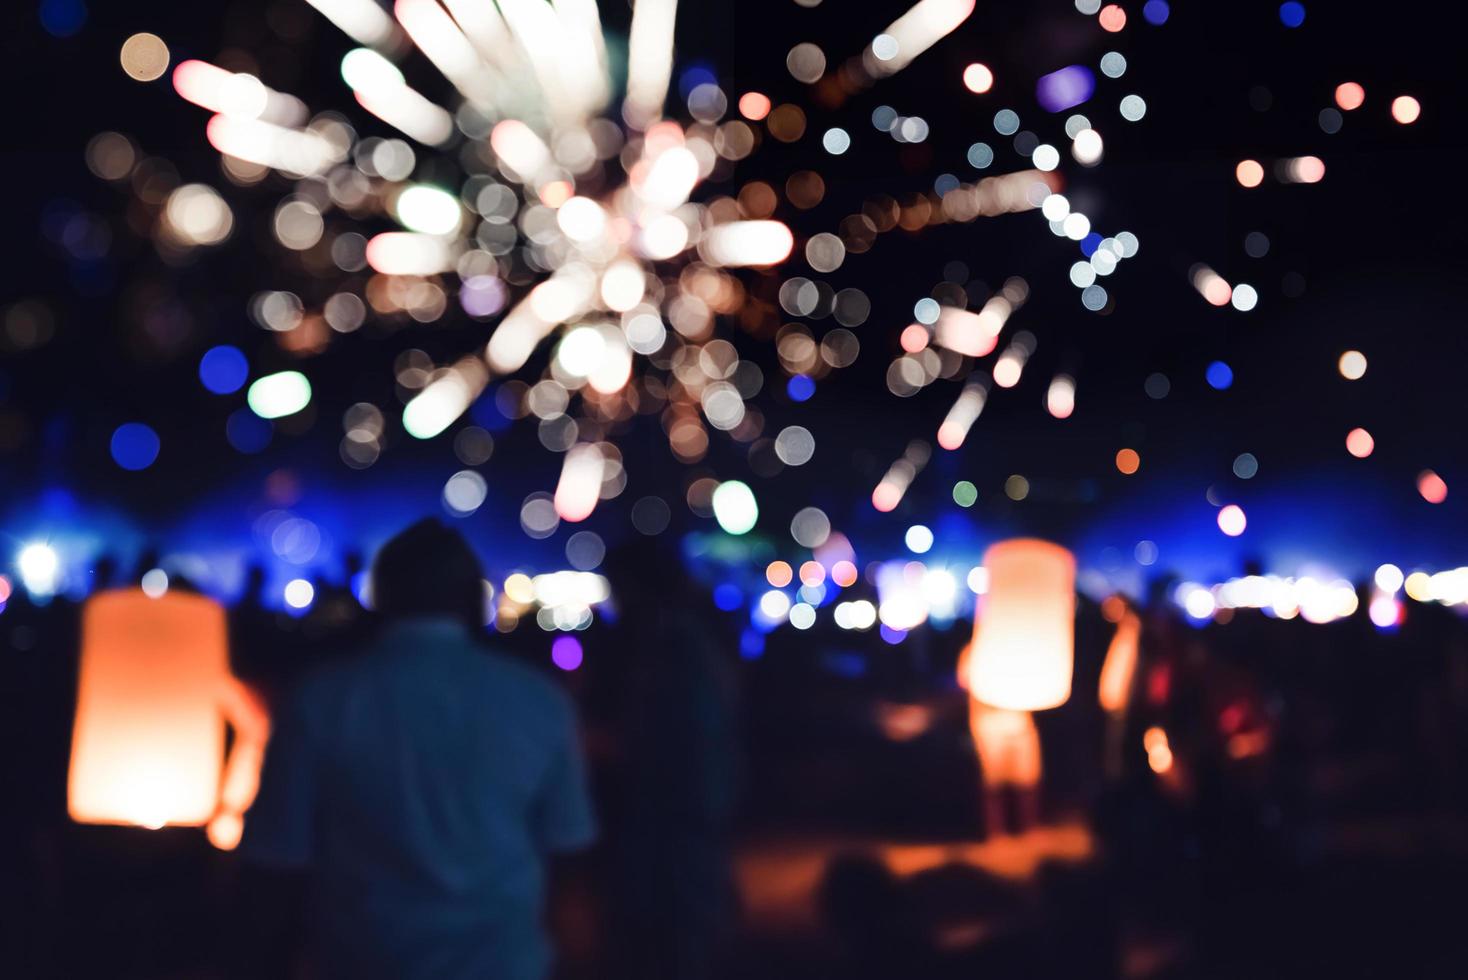 Leute feiern neues Jahr. Feuerwerk-Kreis-Unschärfe. bunt zum Feiern. thailändischer strand foto